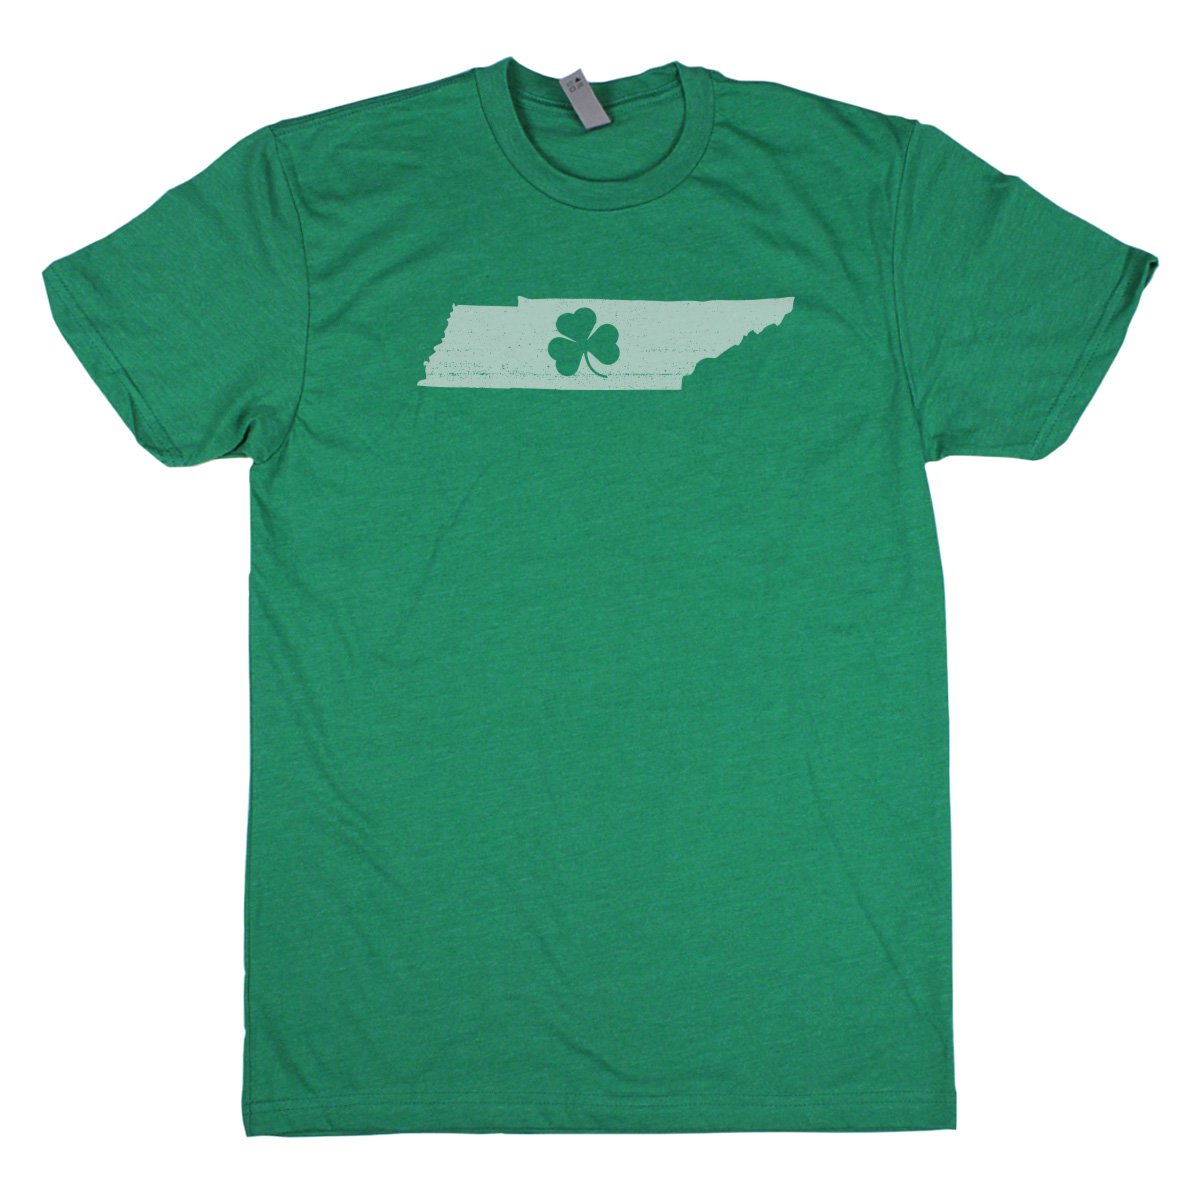 Shamrock Men's Unisex T-Shirt - New Hampshire